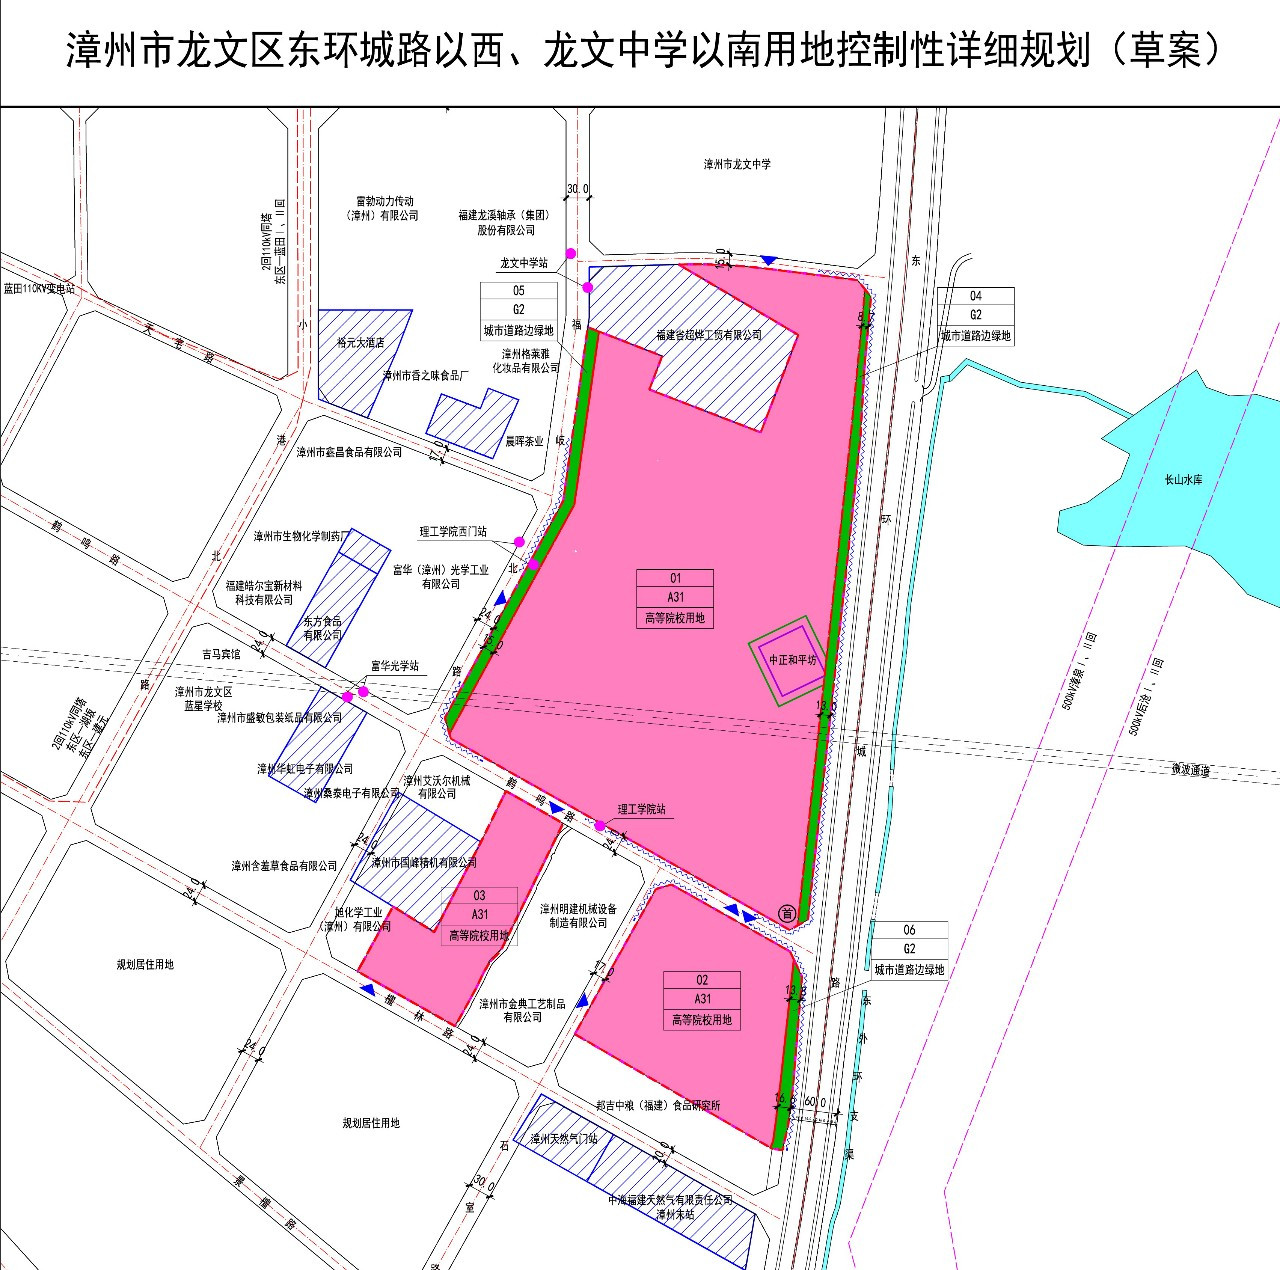 漳州理工将扩办学规模 市区规划约518亩高校用地